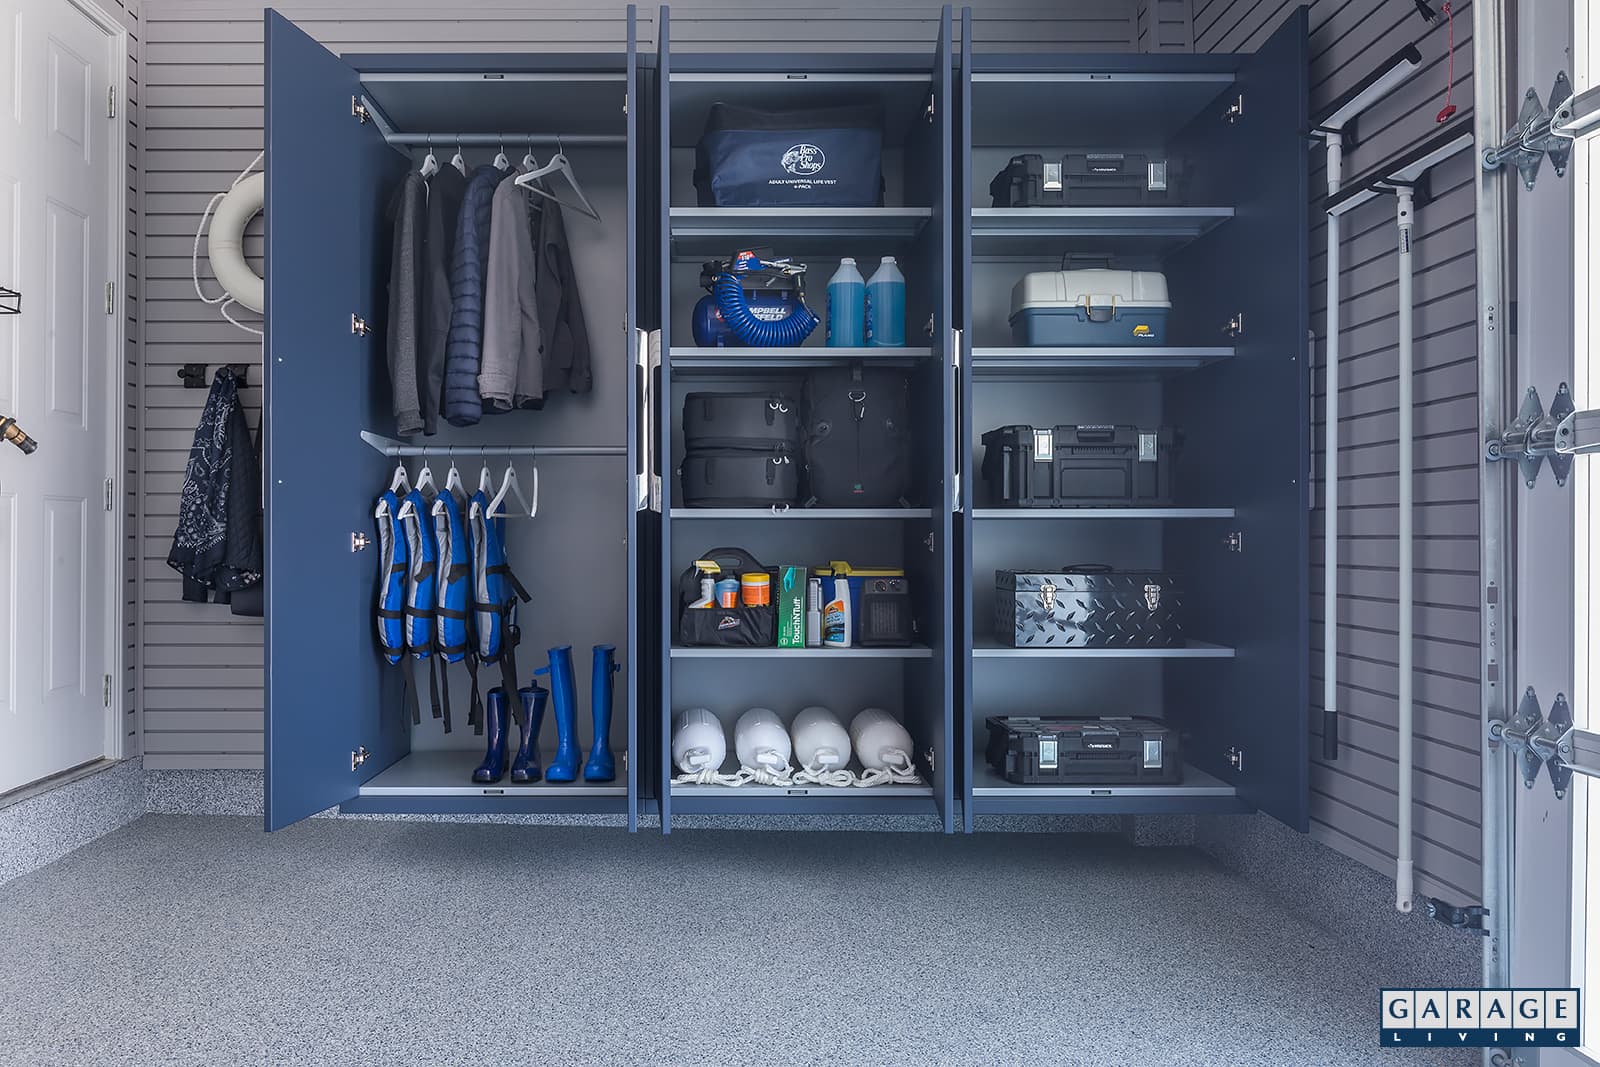 Harbor Blue: Garage Living's Newest Design Color